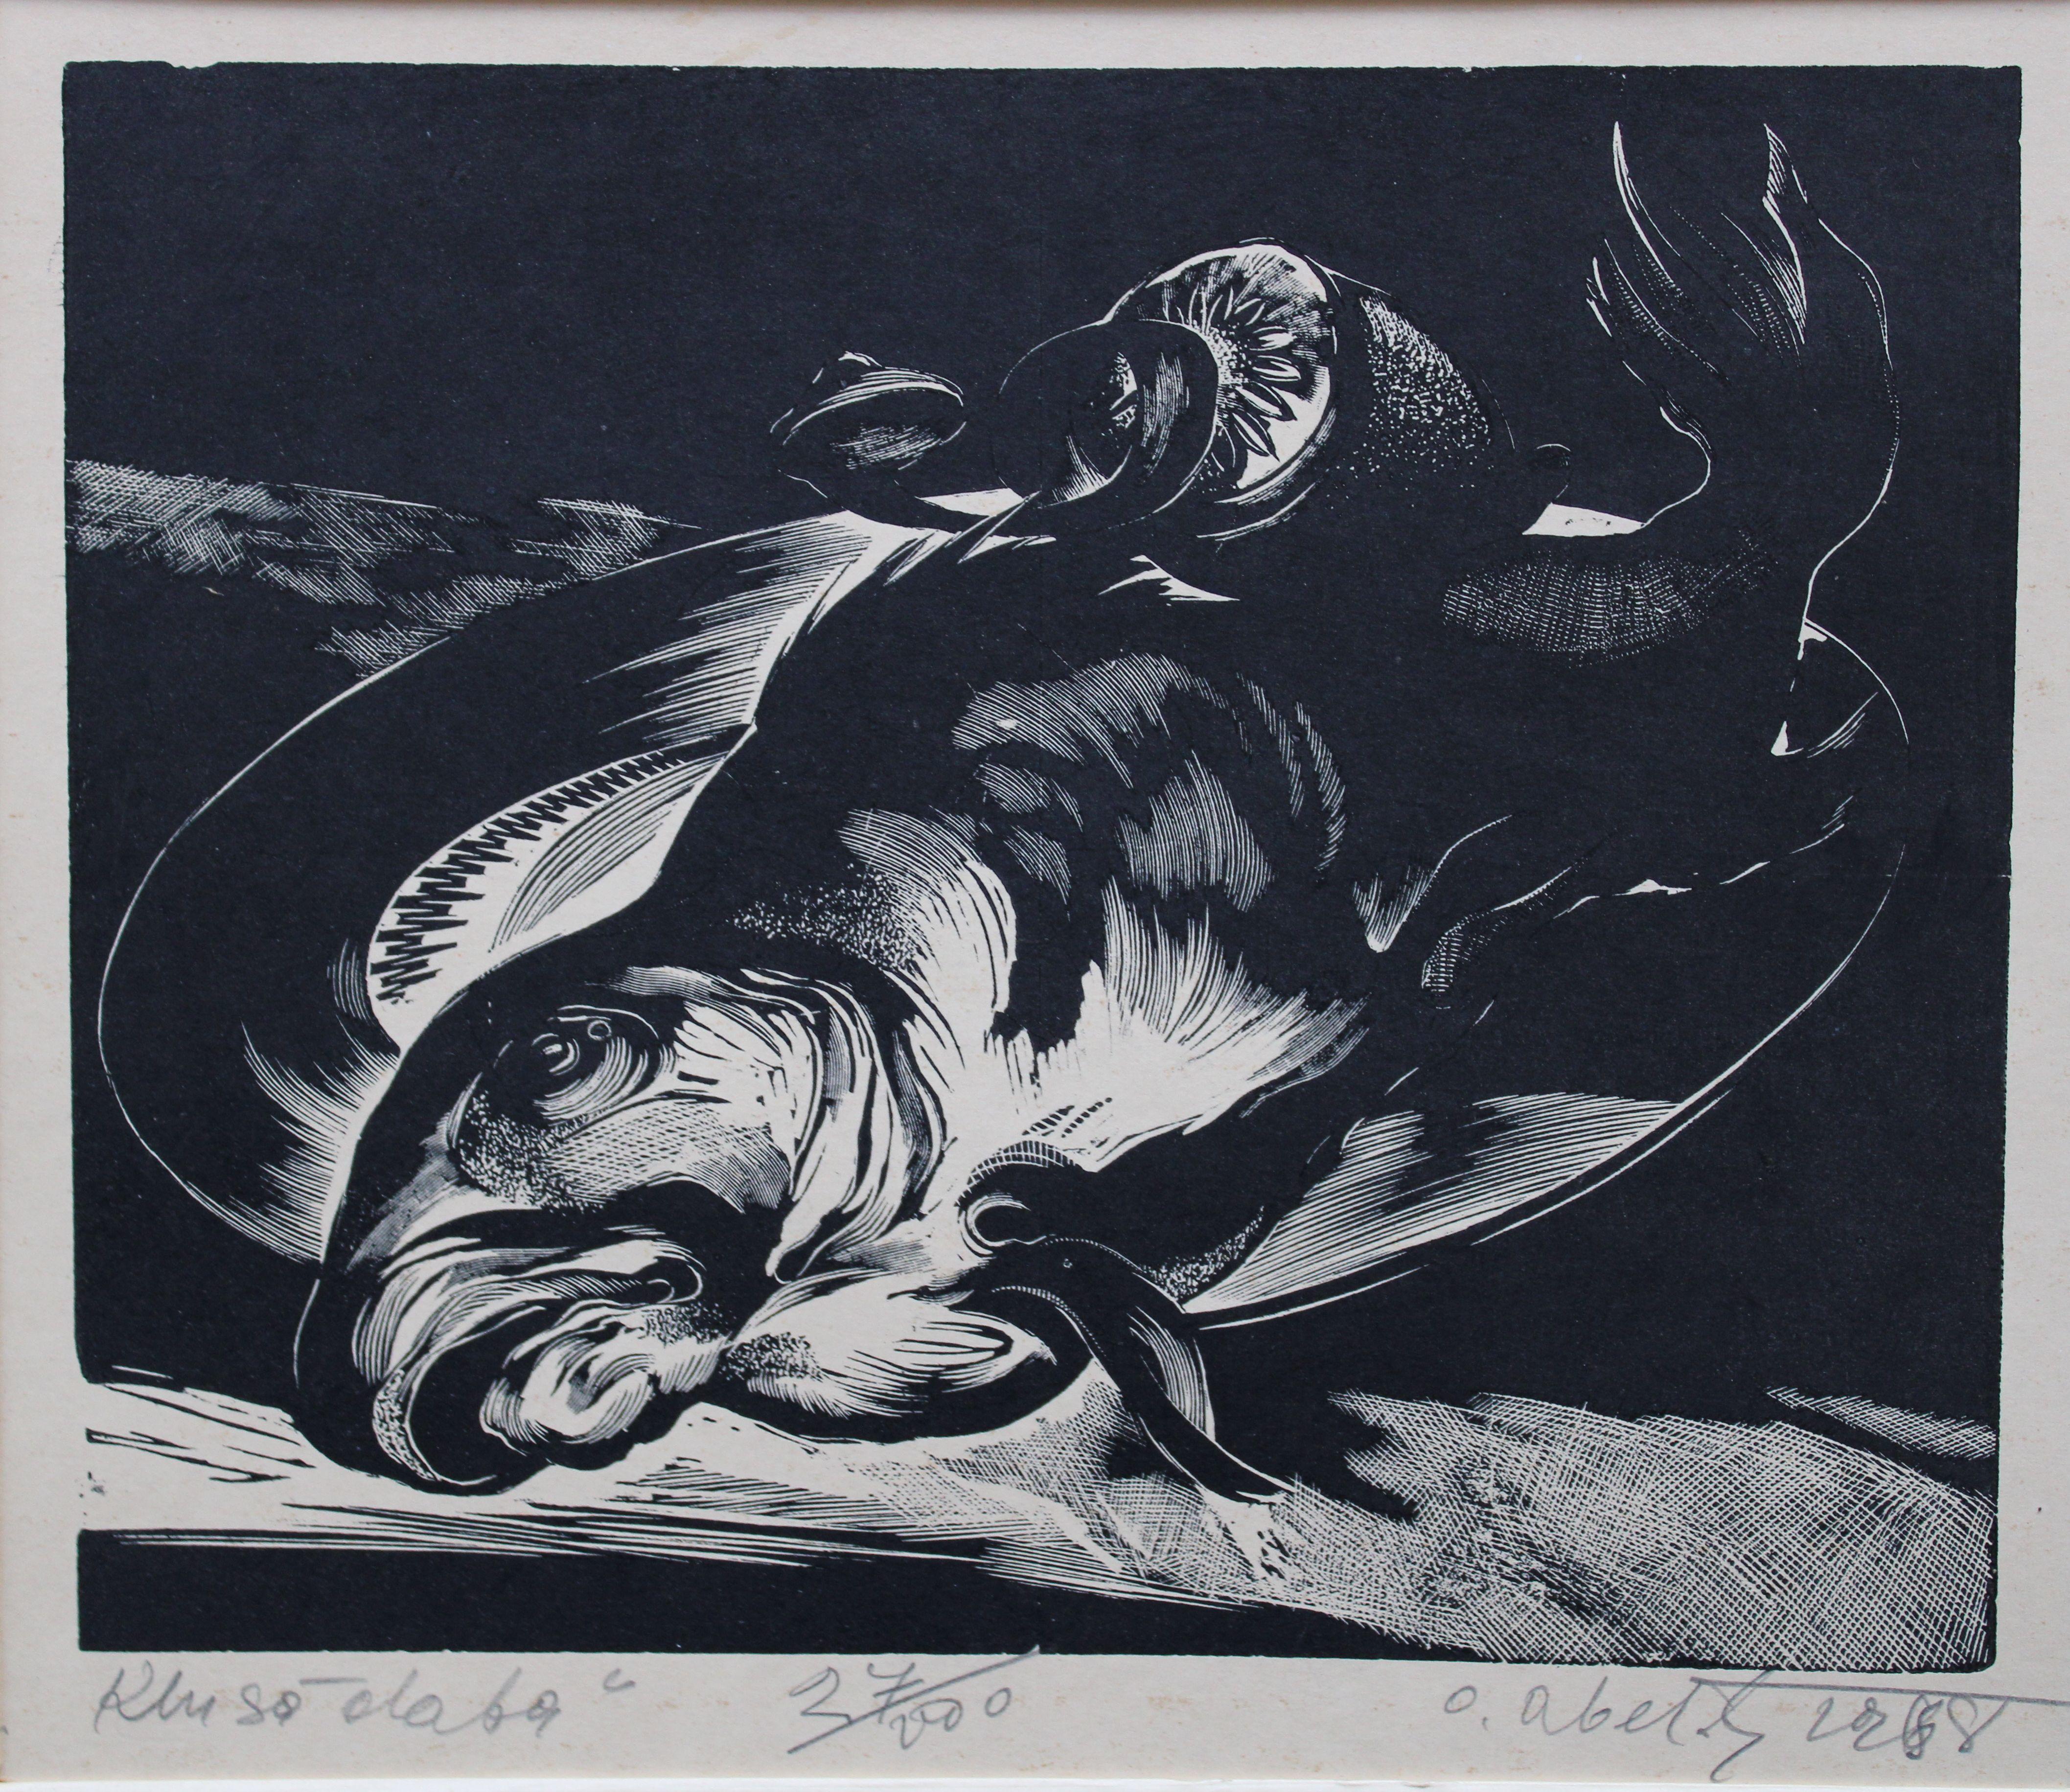 Stillleben 13/100. Papier, Linolschnitt, 5/100, 22x25 cm, 1967 – Print von Olgerts Abelite